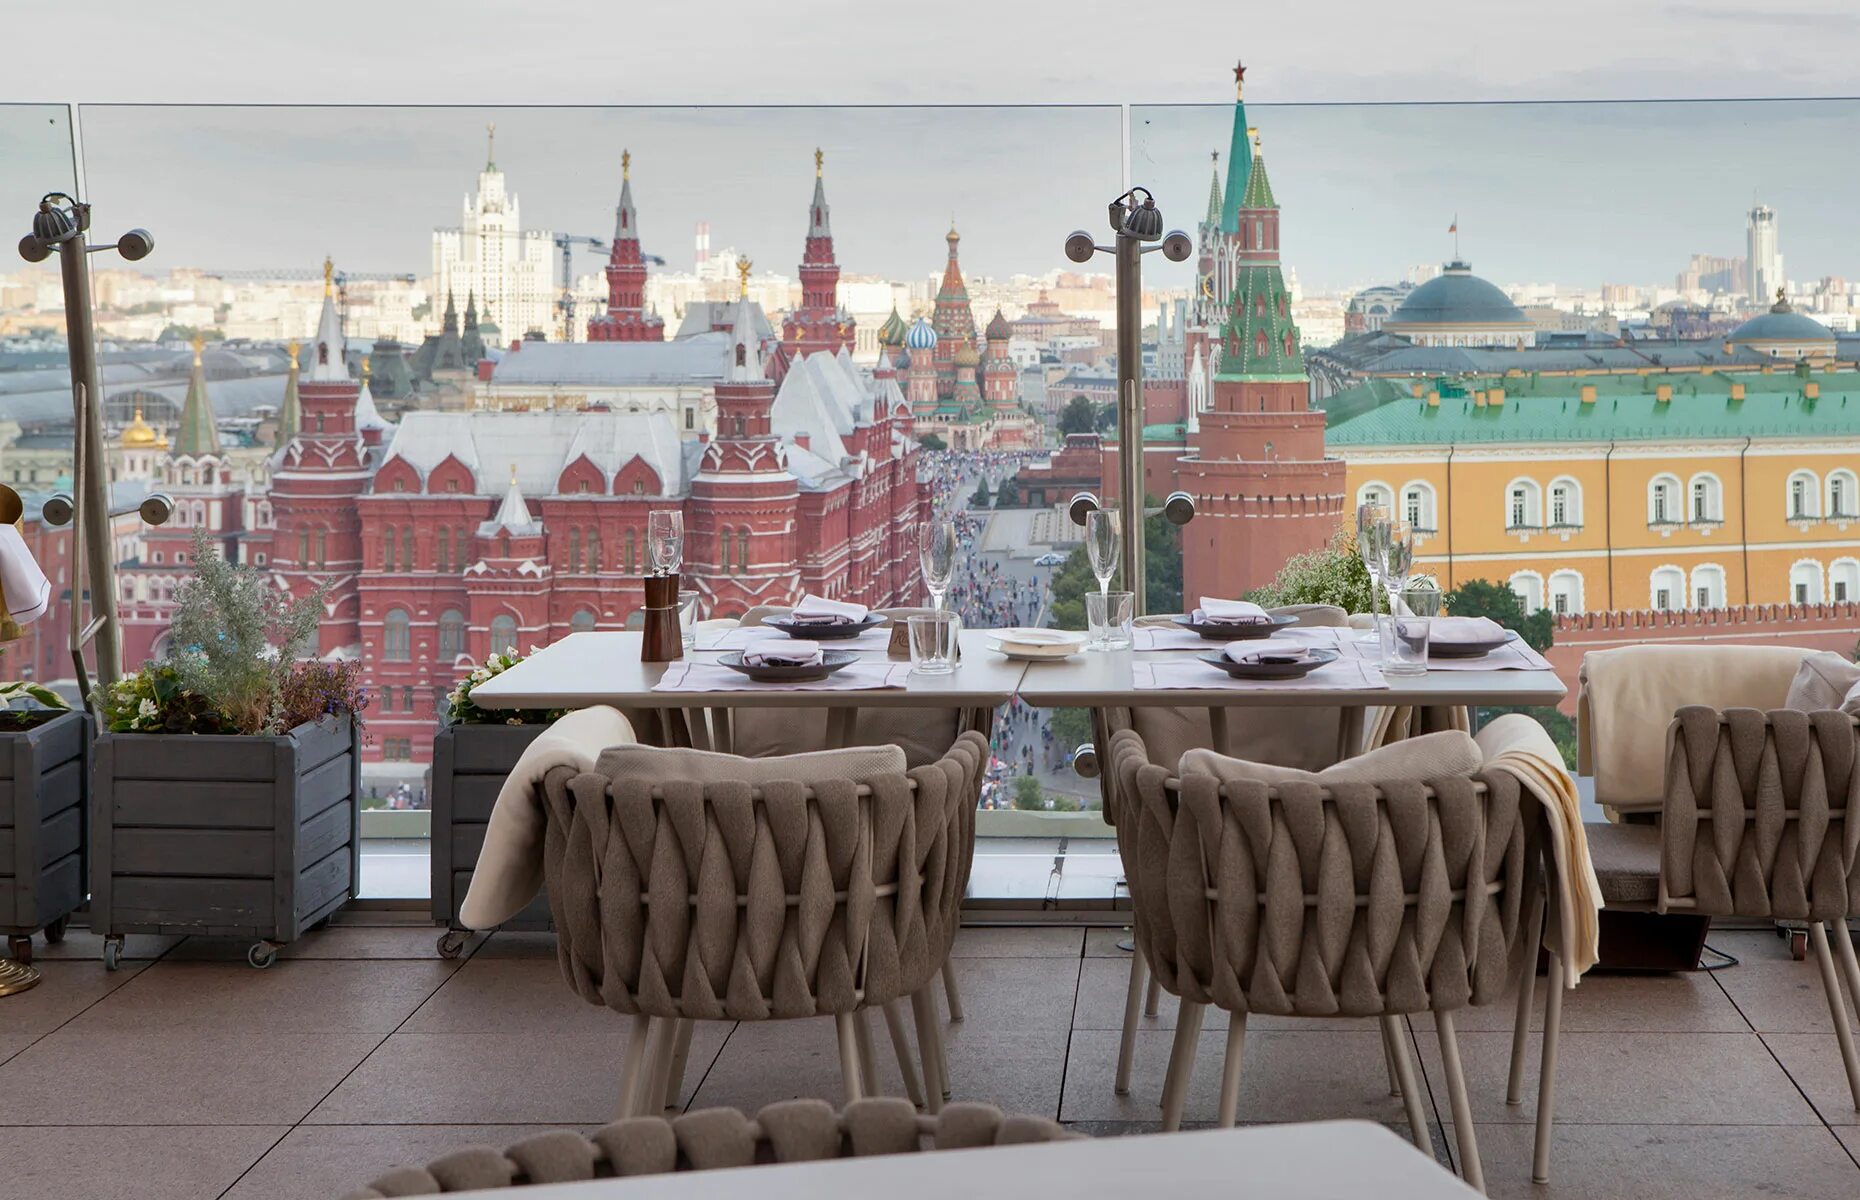 Гостиница Националь вид на Кремль. Веранда Ритц Карлтон. Вид на Кремль с гостиницы Балчуг.